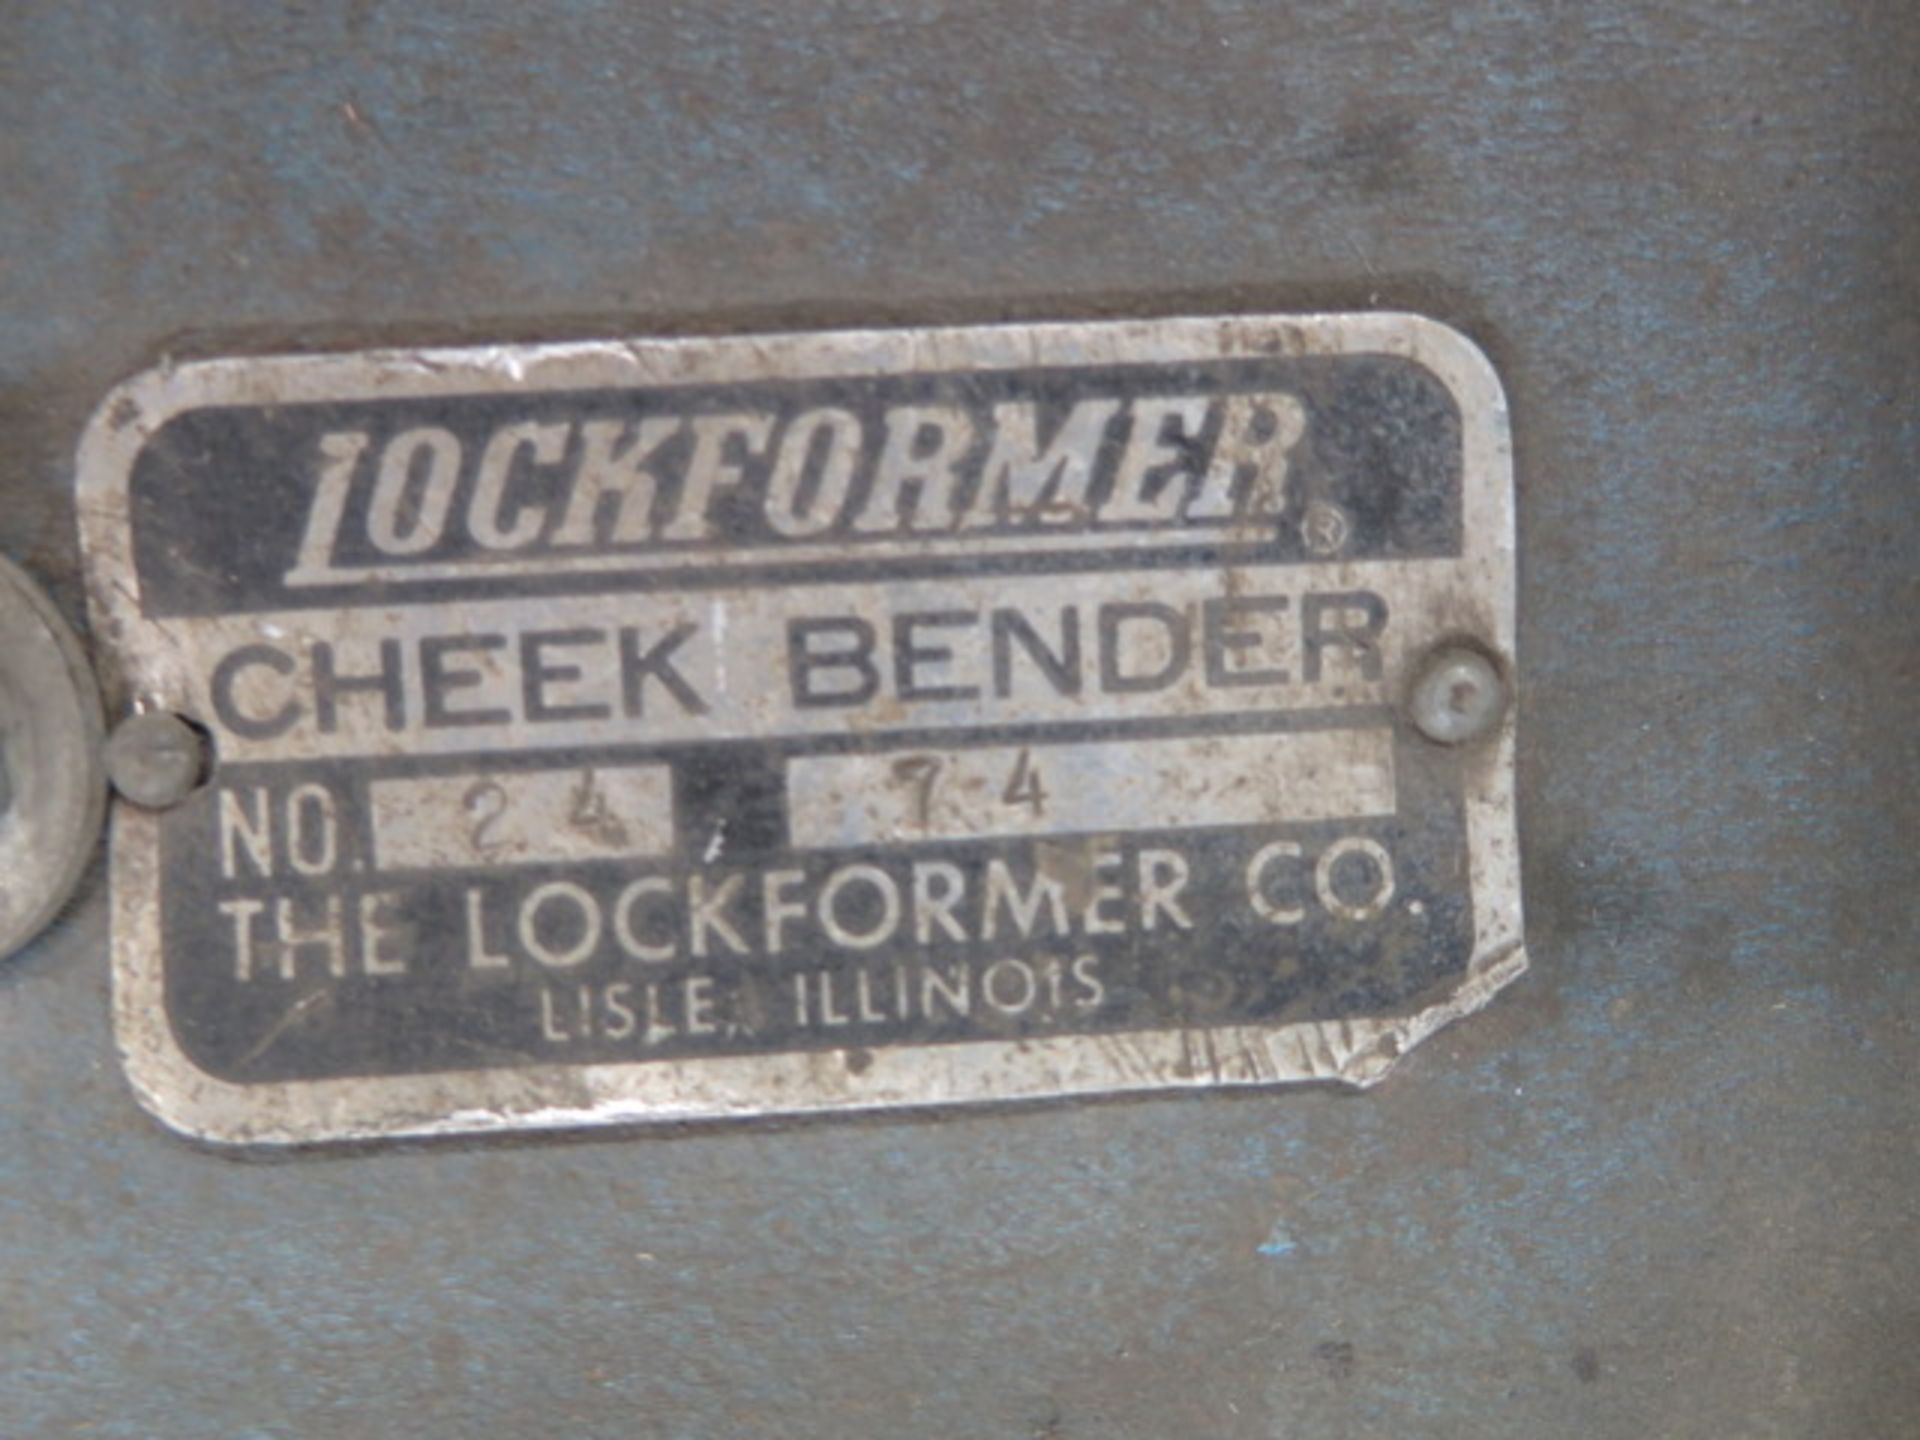 Lockformer No. 24 24” Cheek Bender s/n 74 - Image 3 of 3